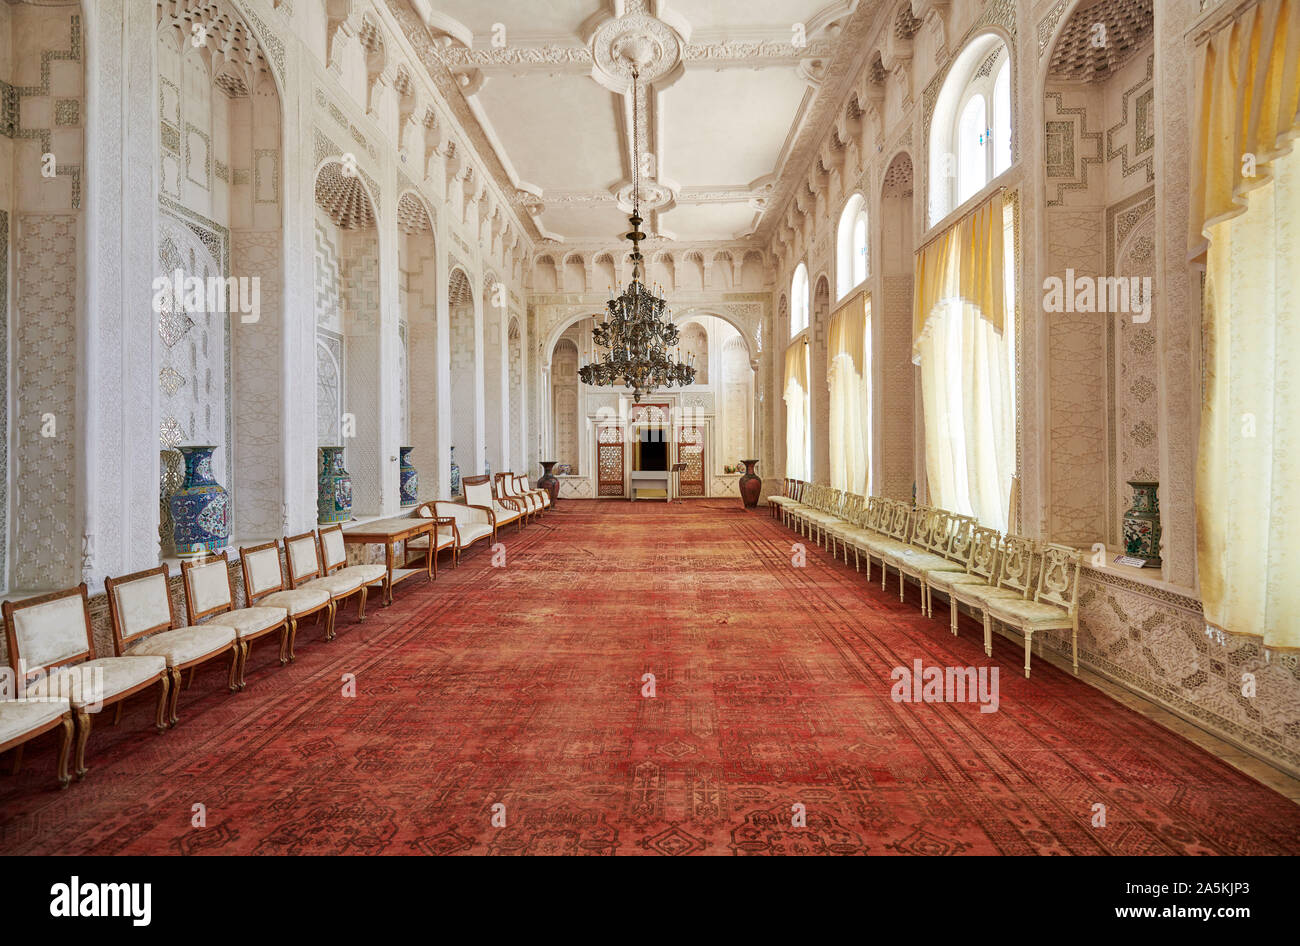 Salón Blanco, magnífica decoración interior de verano palacio residencial, Sitorai Mohi Hossa o Sitorai Mohi Khosa de último Emir de Bukhara, Uzbekistán Foto de stock